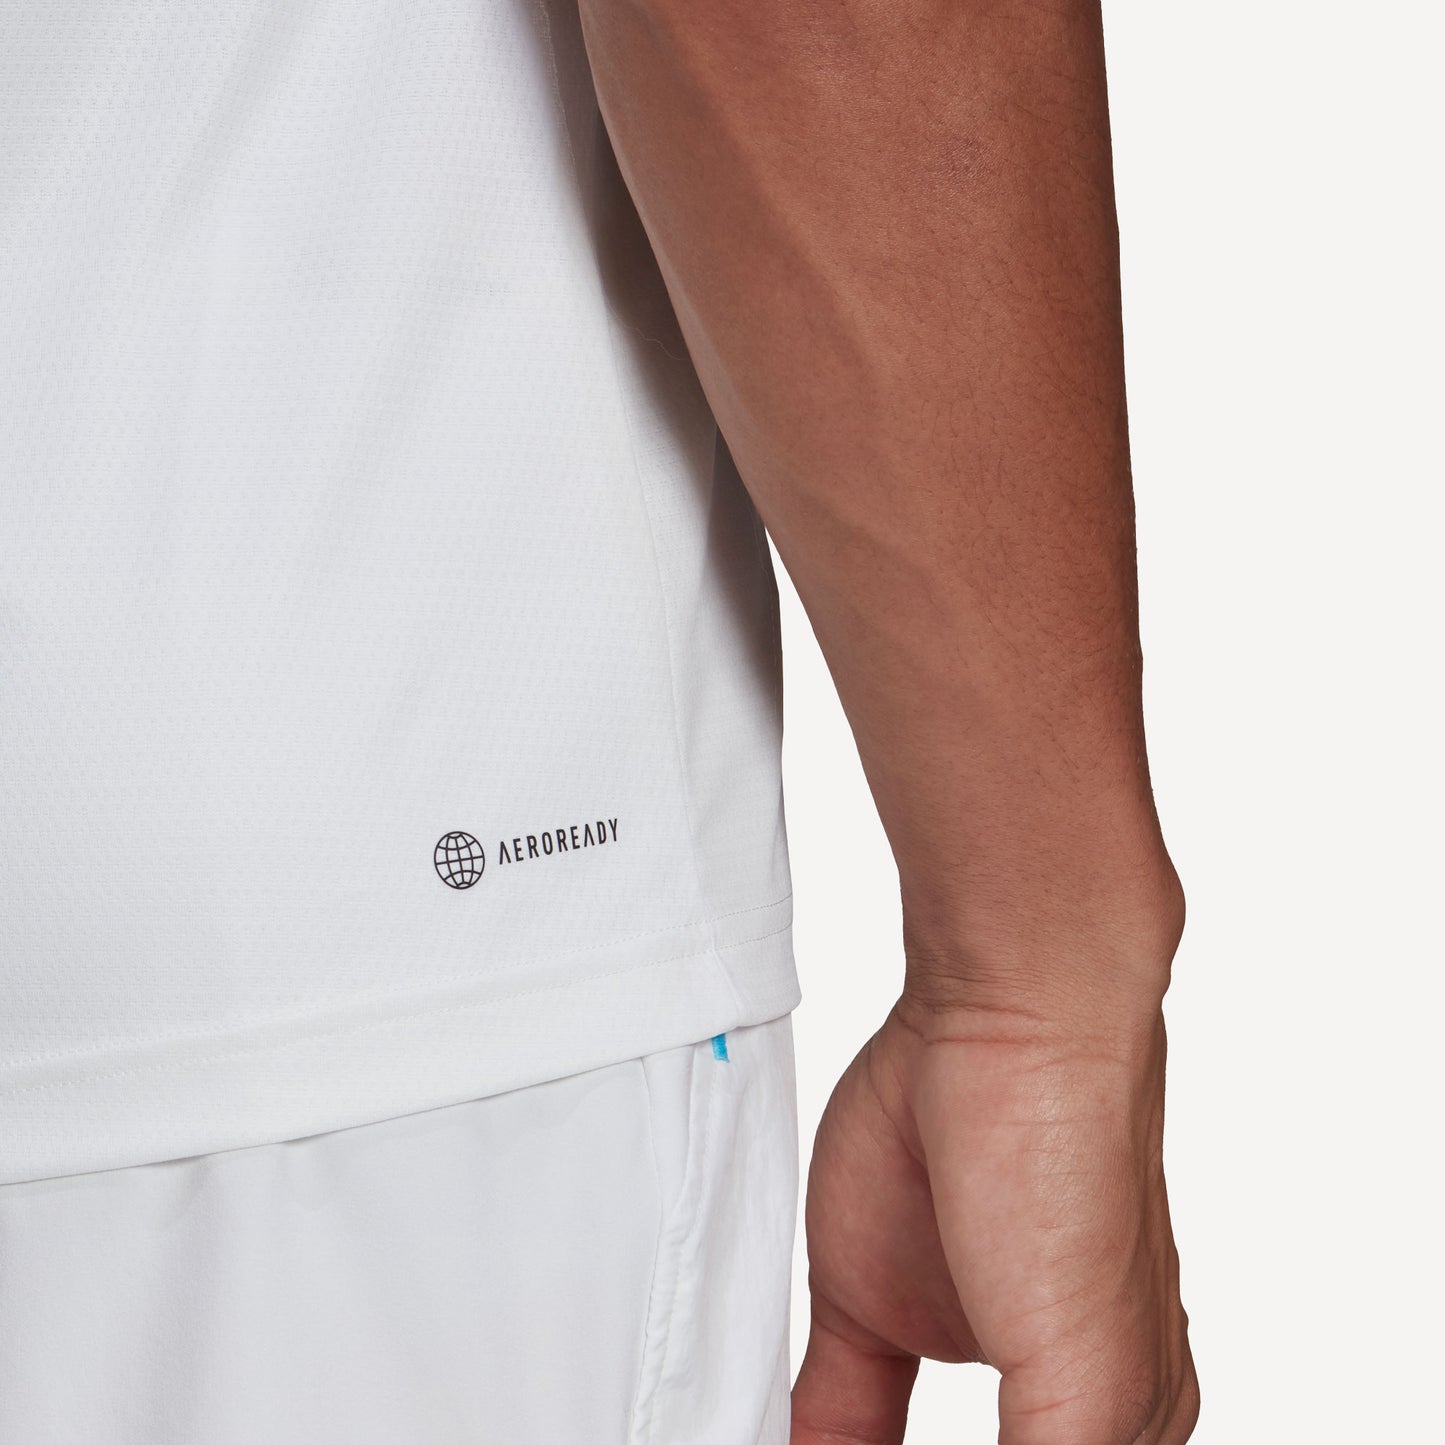 adidas Melbourne Freelift Men's Tennis Shirt White (6)